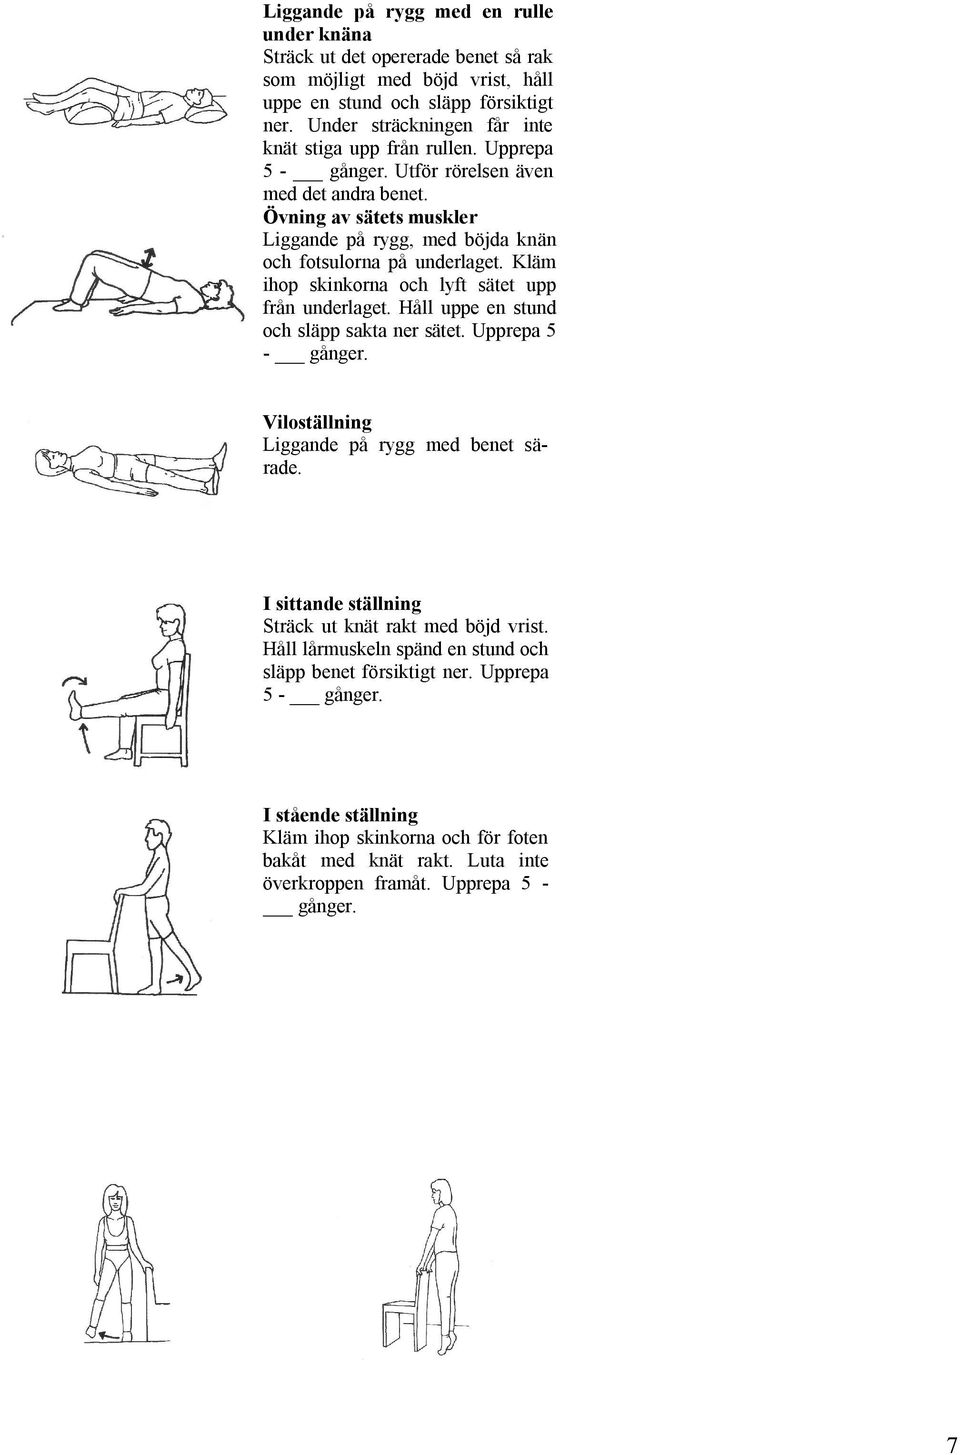 Övning av sätets muskler Liggande på rygg, med böjda knän och fotsulorna på underlaget. Kläm ihop skinkorna och lyft sätet upp från underlaget. Håll uppe en stund och släpp sakta ner sätet.